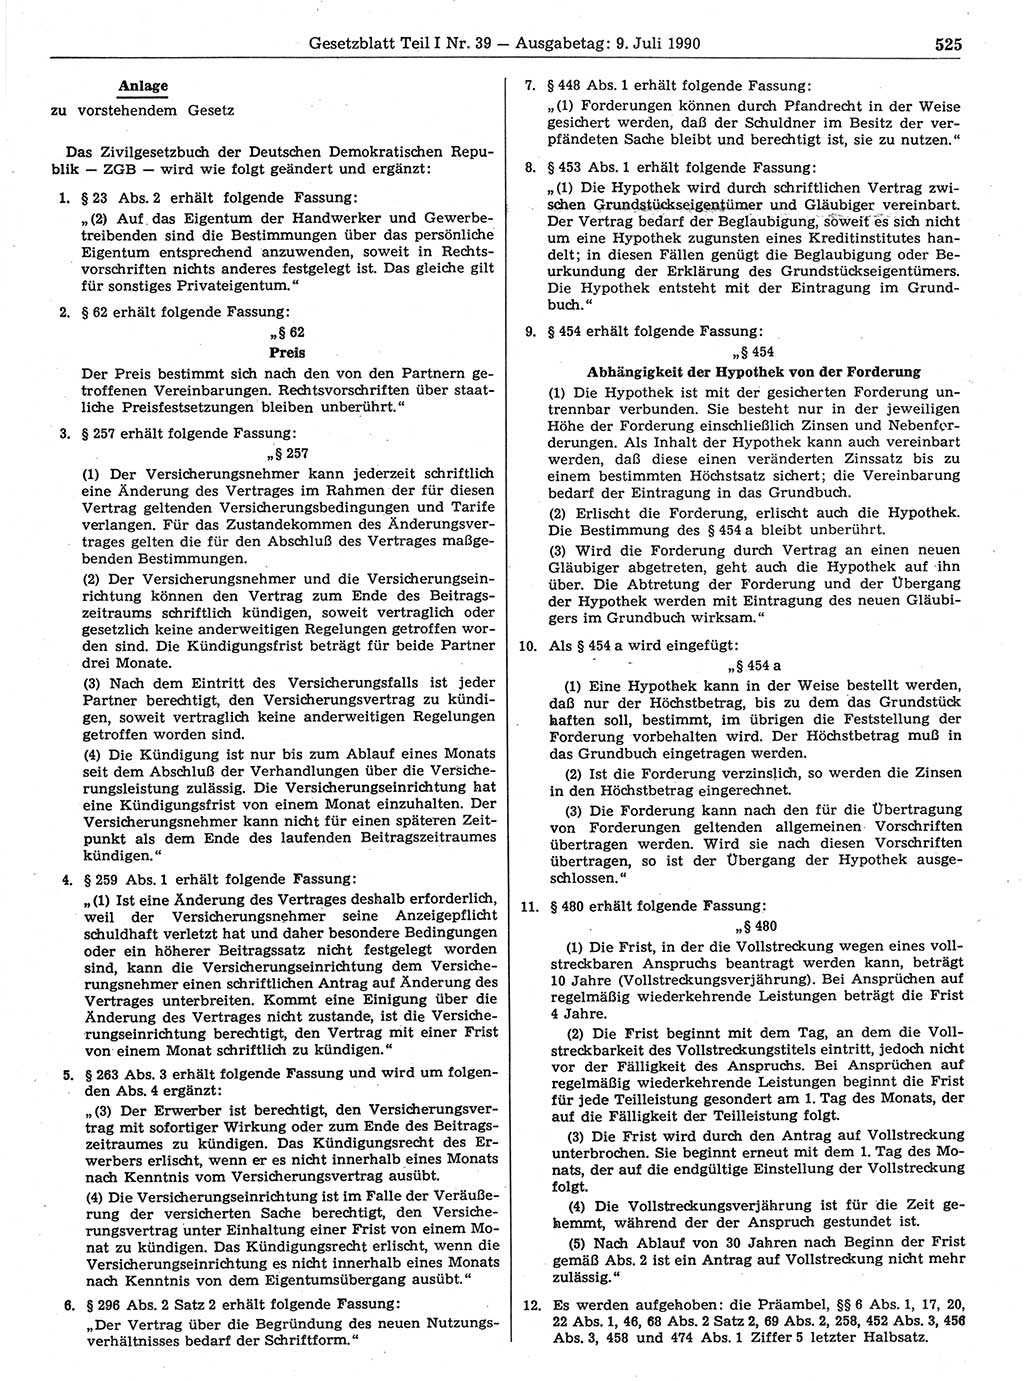 Gesetzblatt (GBl.) der Deutschen Demokratischen Republik (DDR) Teil Ⅰ 1990, Seite 525 (GBl. DDR Ⅰ 1990, S. 525)